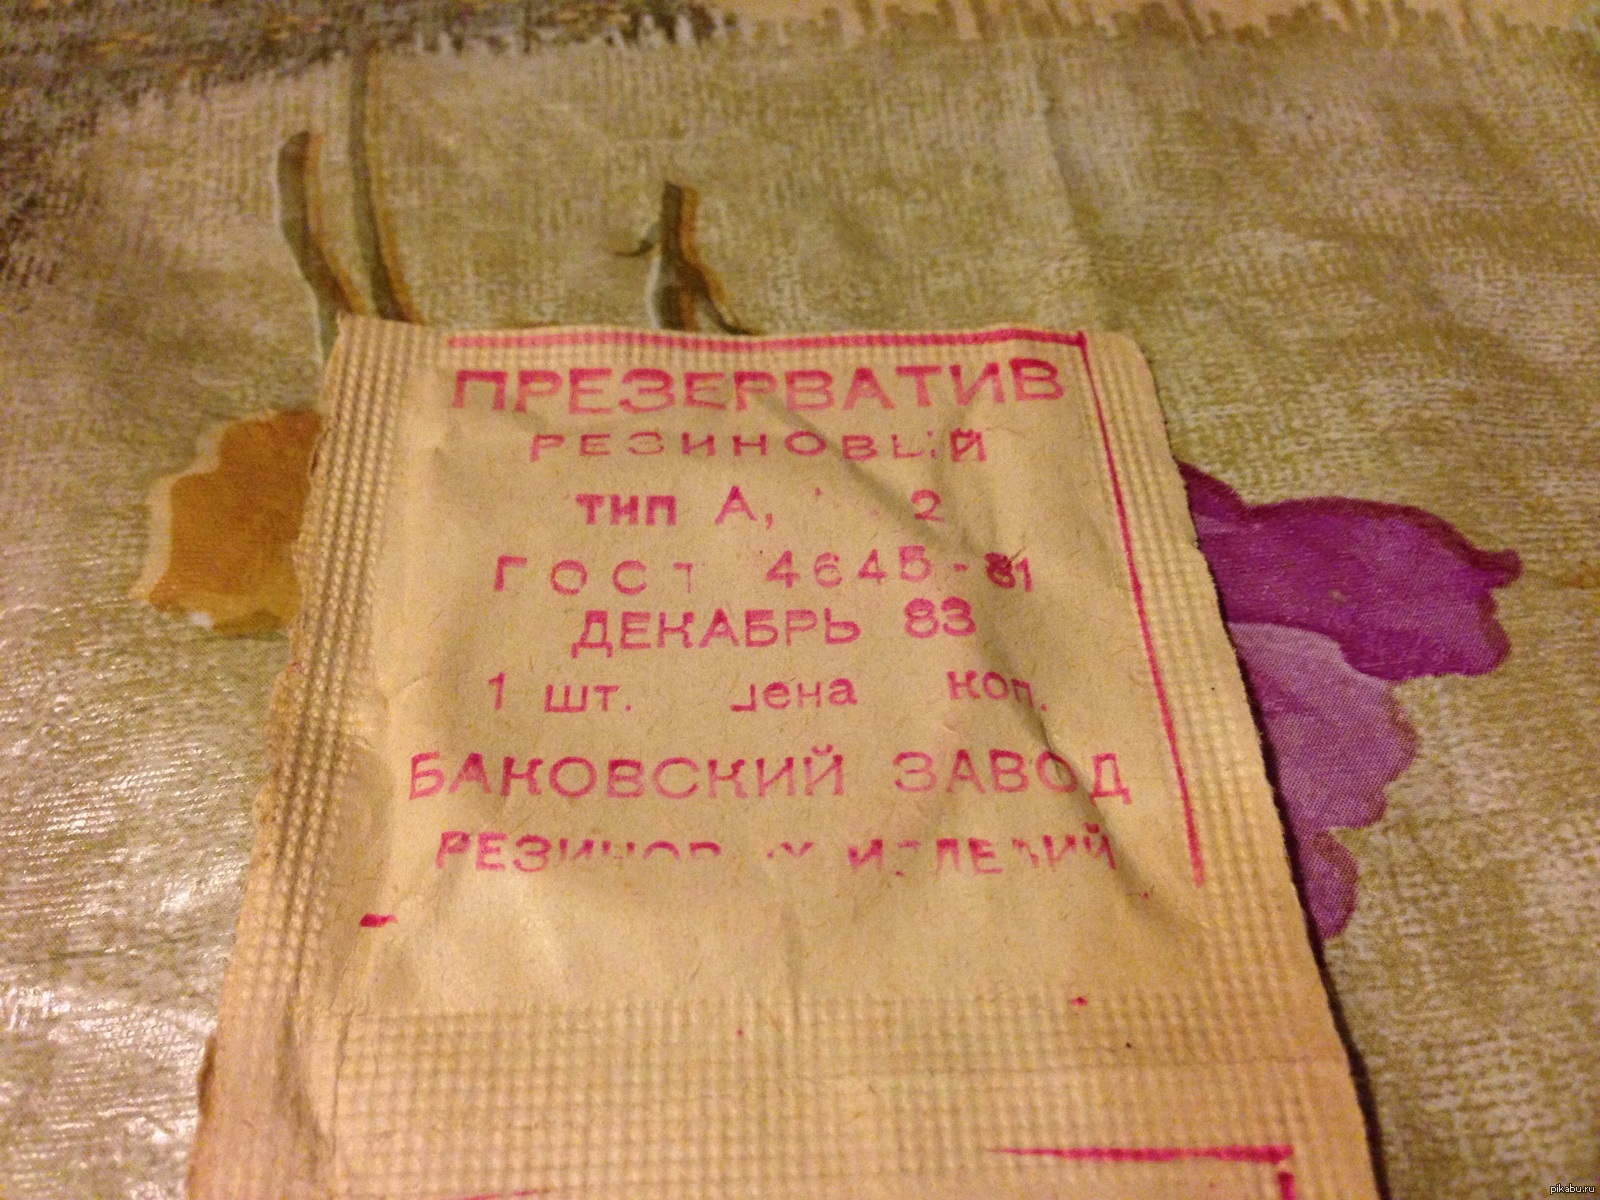 Изделие номер один. Резиновое изделие номер 2. Резиновое изделие 2 в СССР. Изделие номер. Резинотехнические изделия презерватив.